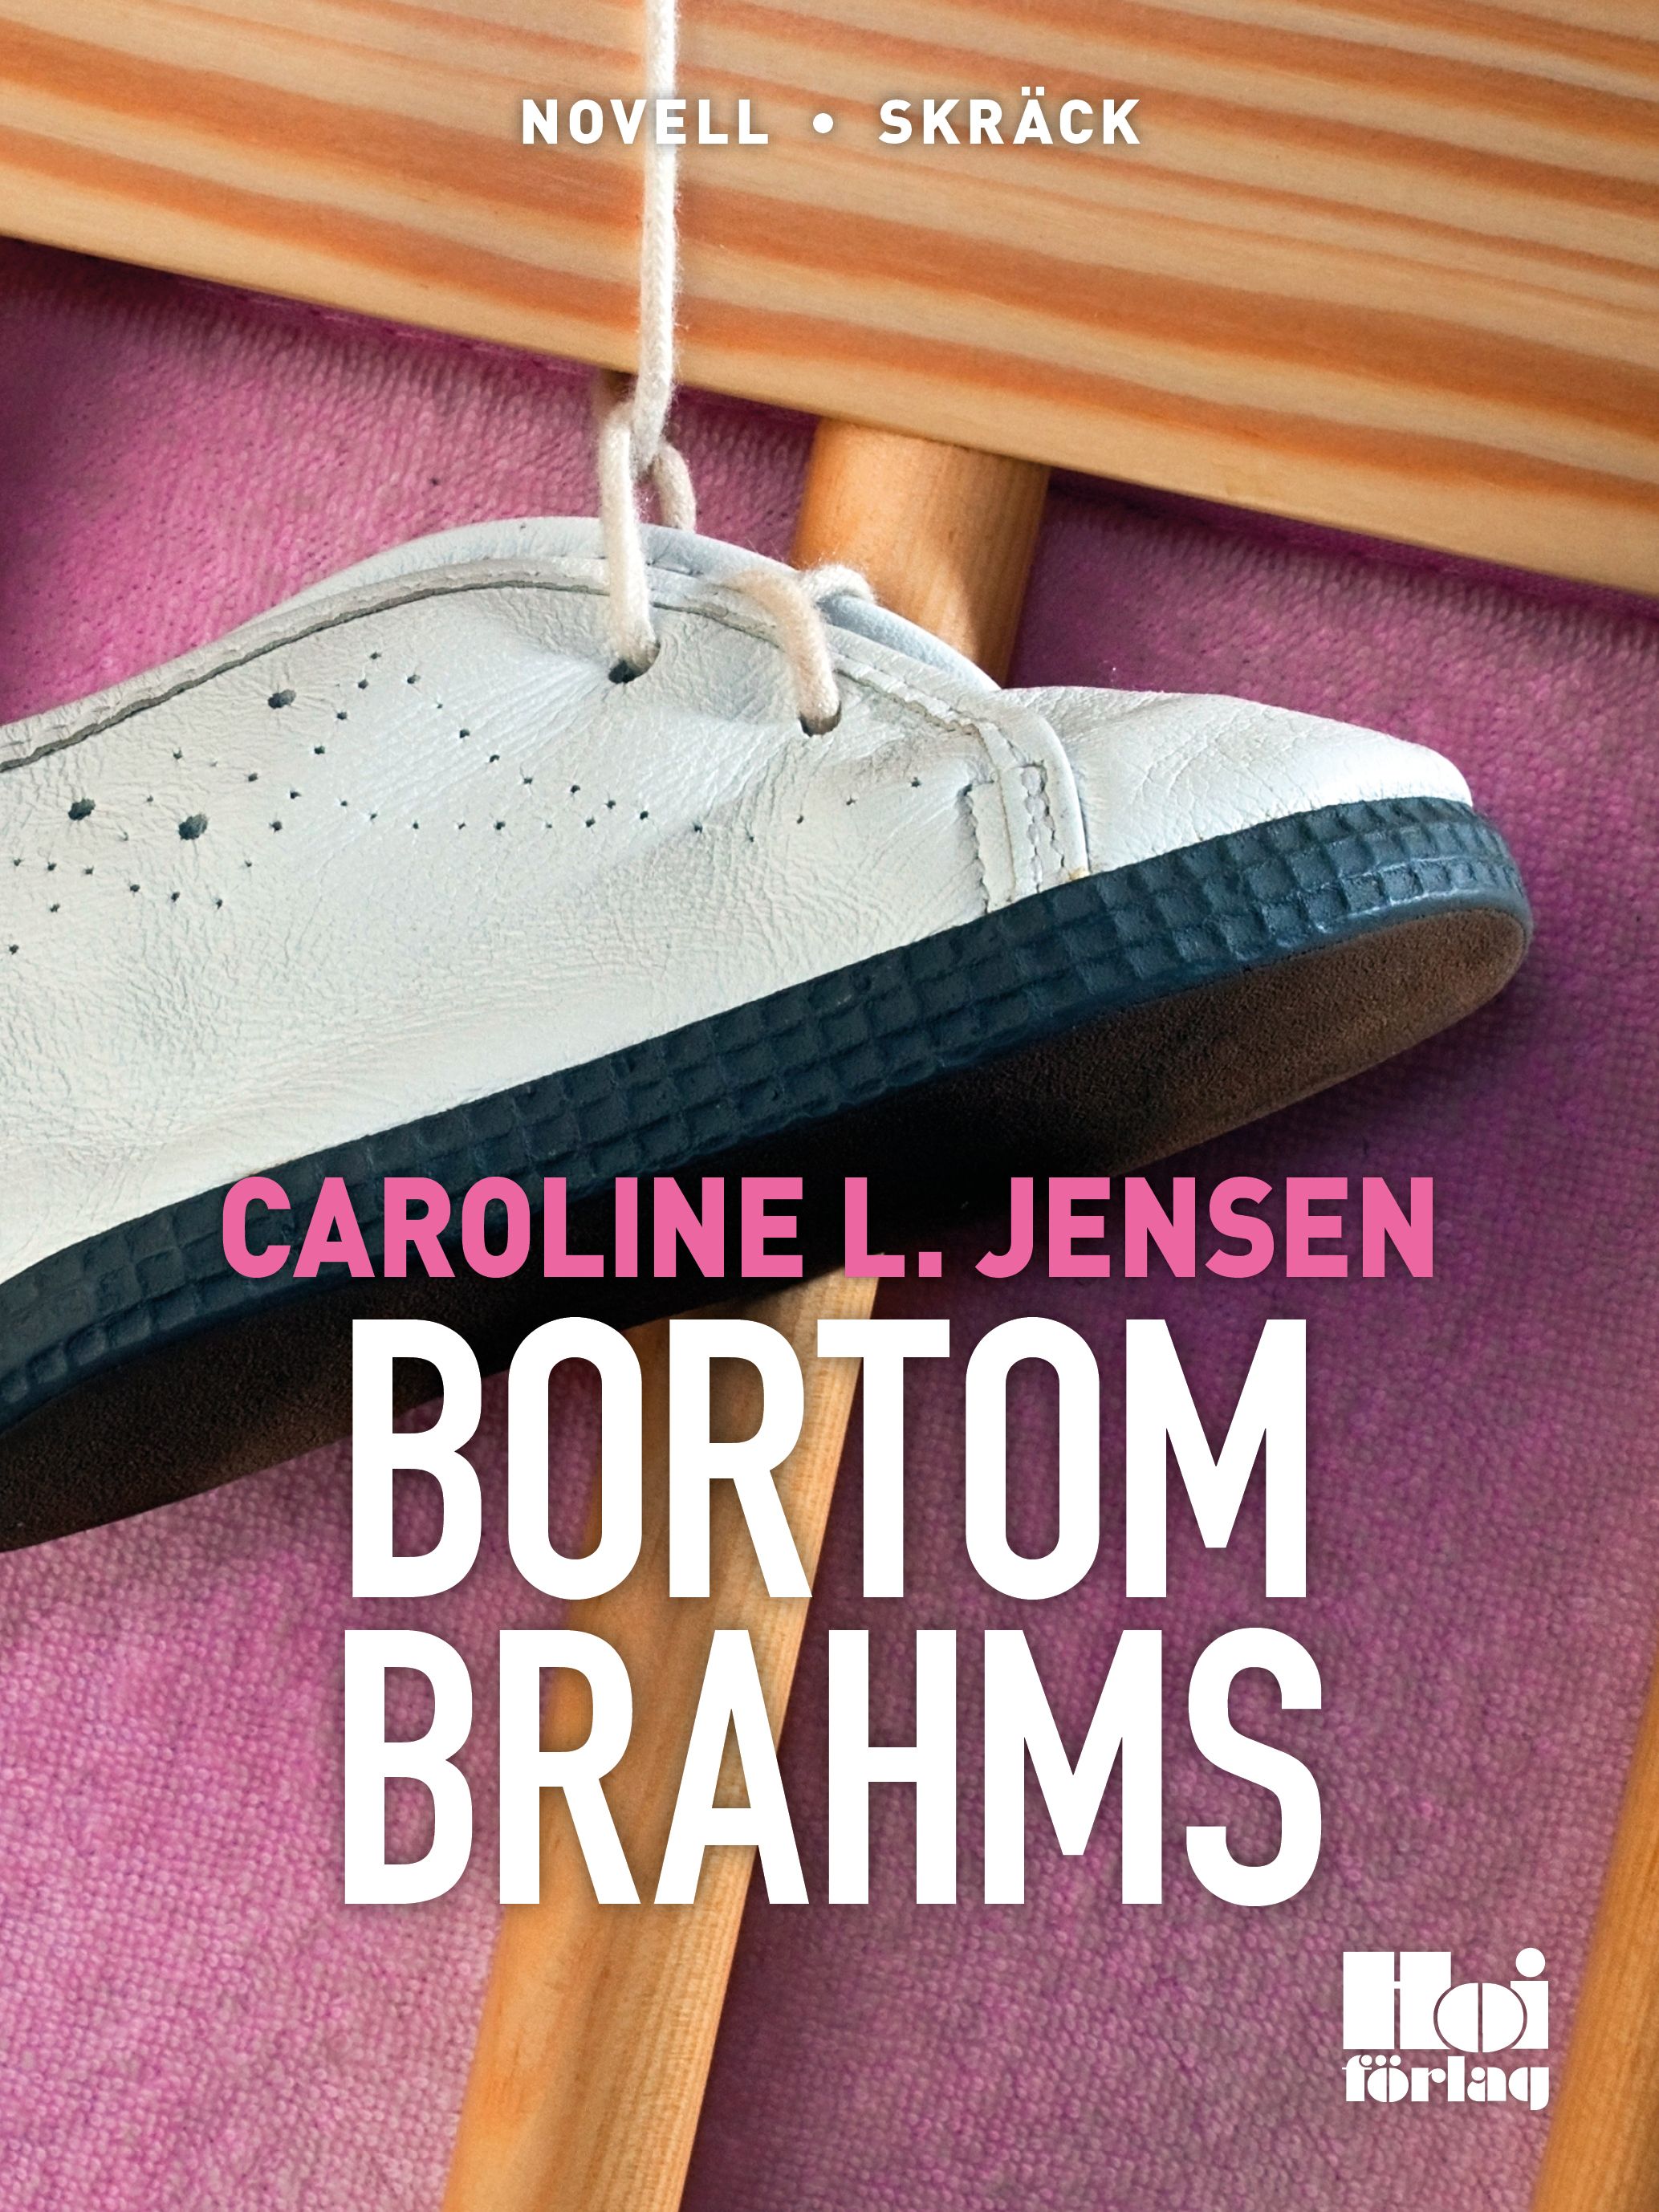 Bortom Brahms, e-bok av Caroline L Jensen